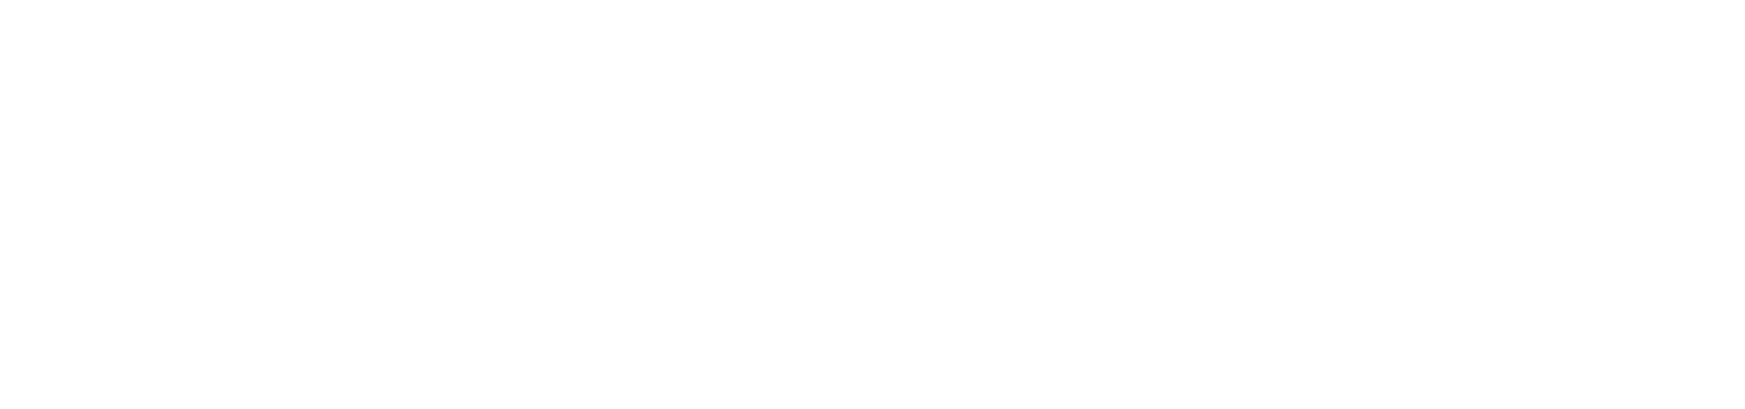 SL-Carrington-View-Logo-2020-horizontal-White